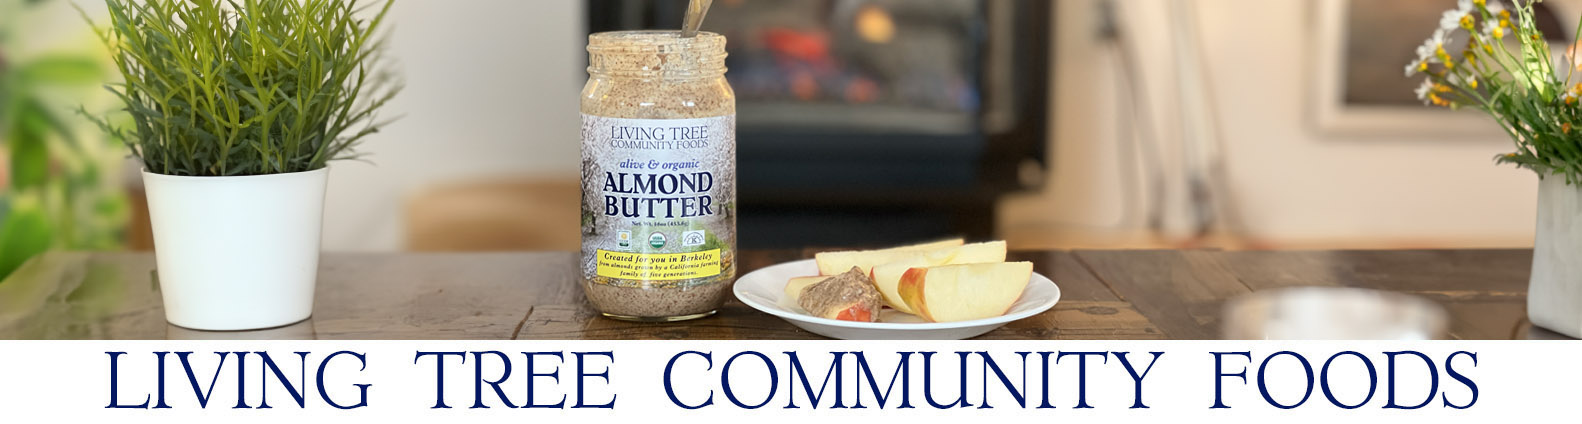 Almond Butter Fireplace Newsletter Header